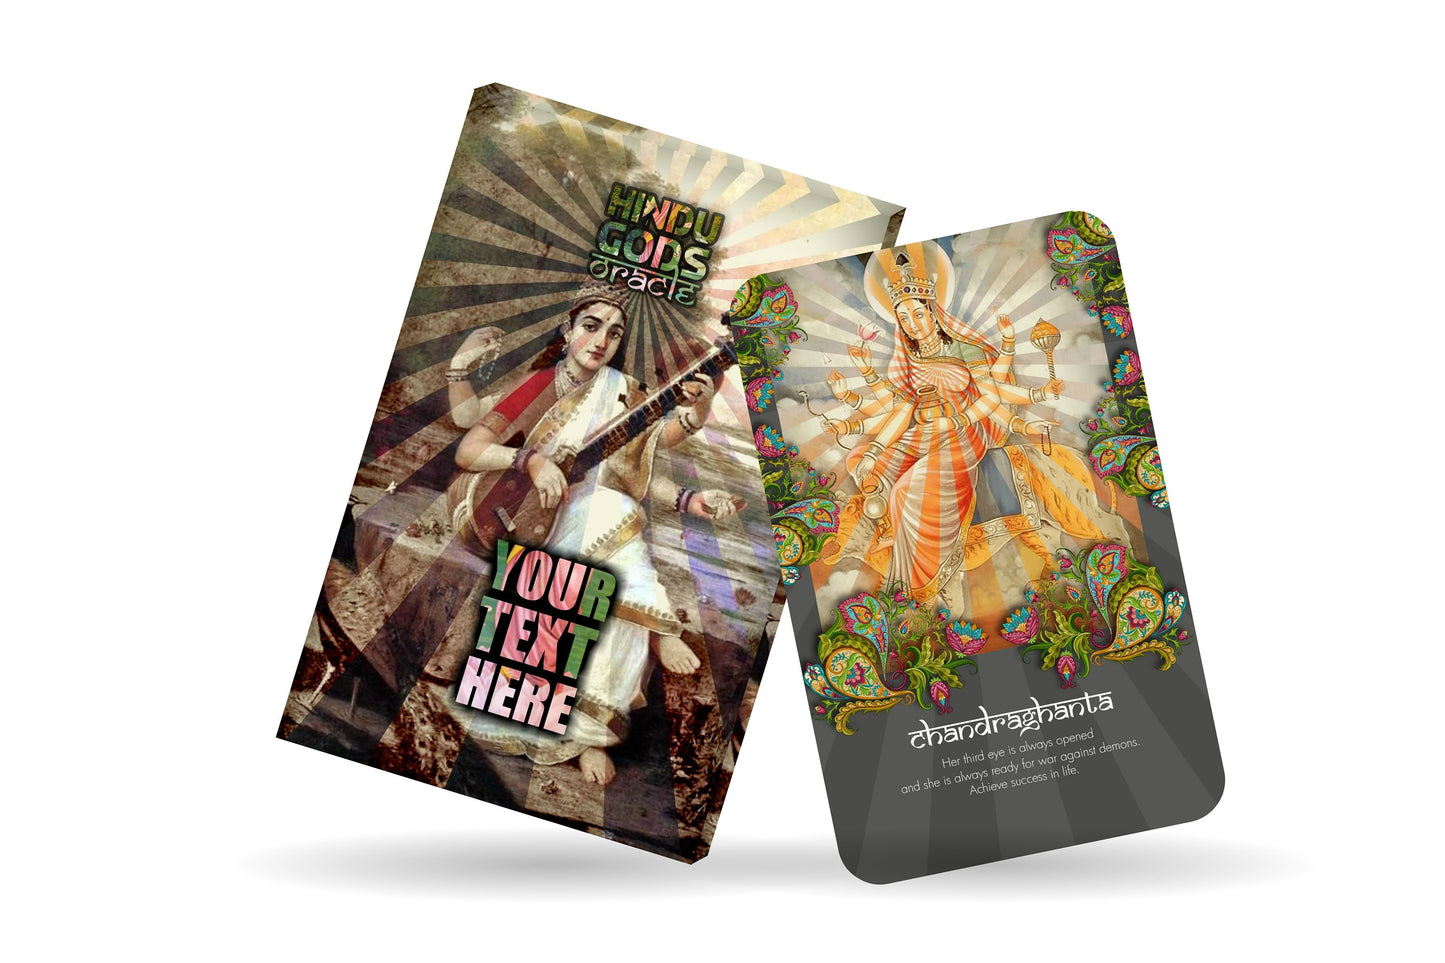 Personalised Oracle - Hindu Gods Oracle